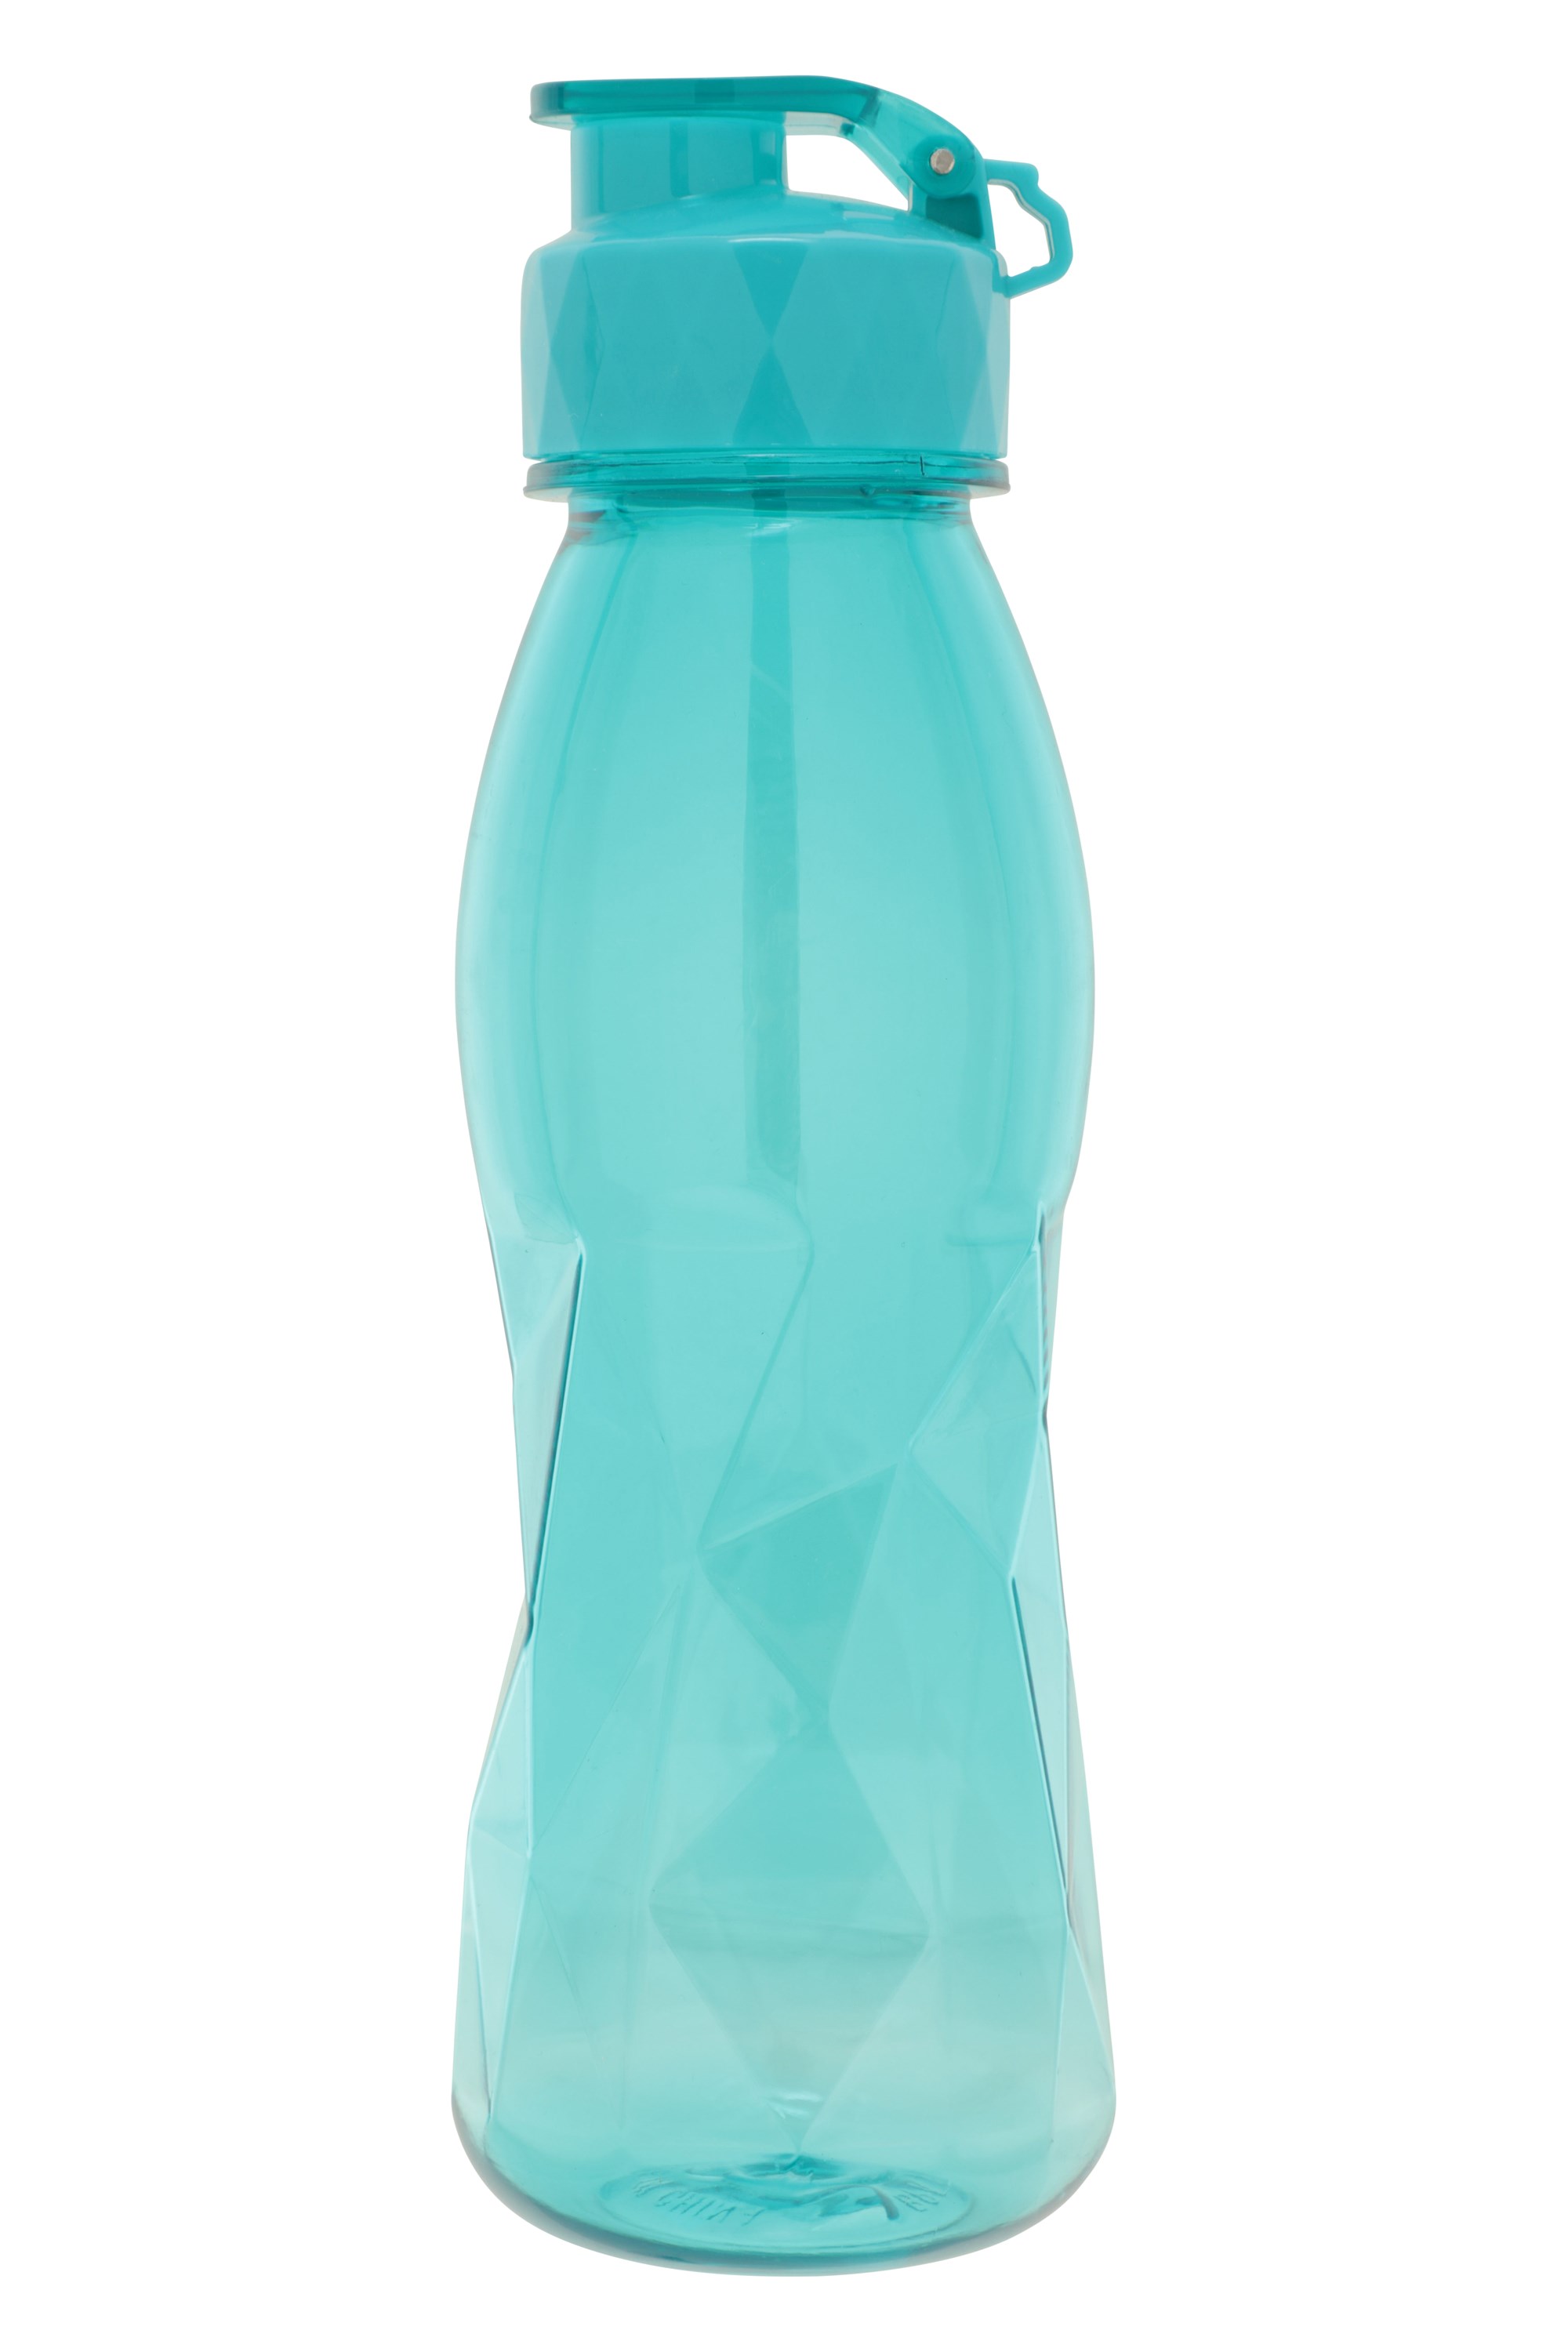 Diamond - butelka plastikowa 750ml - Teal